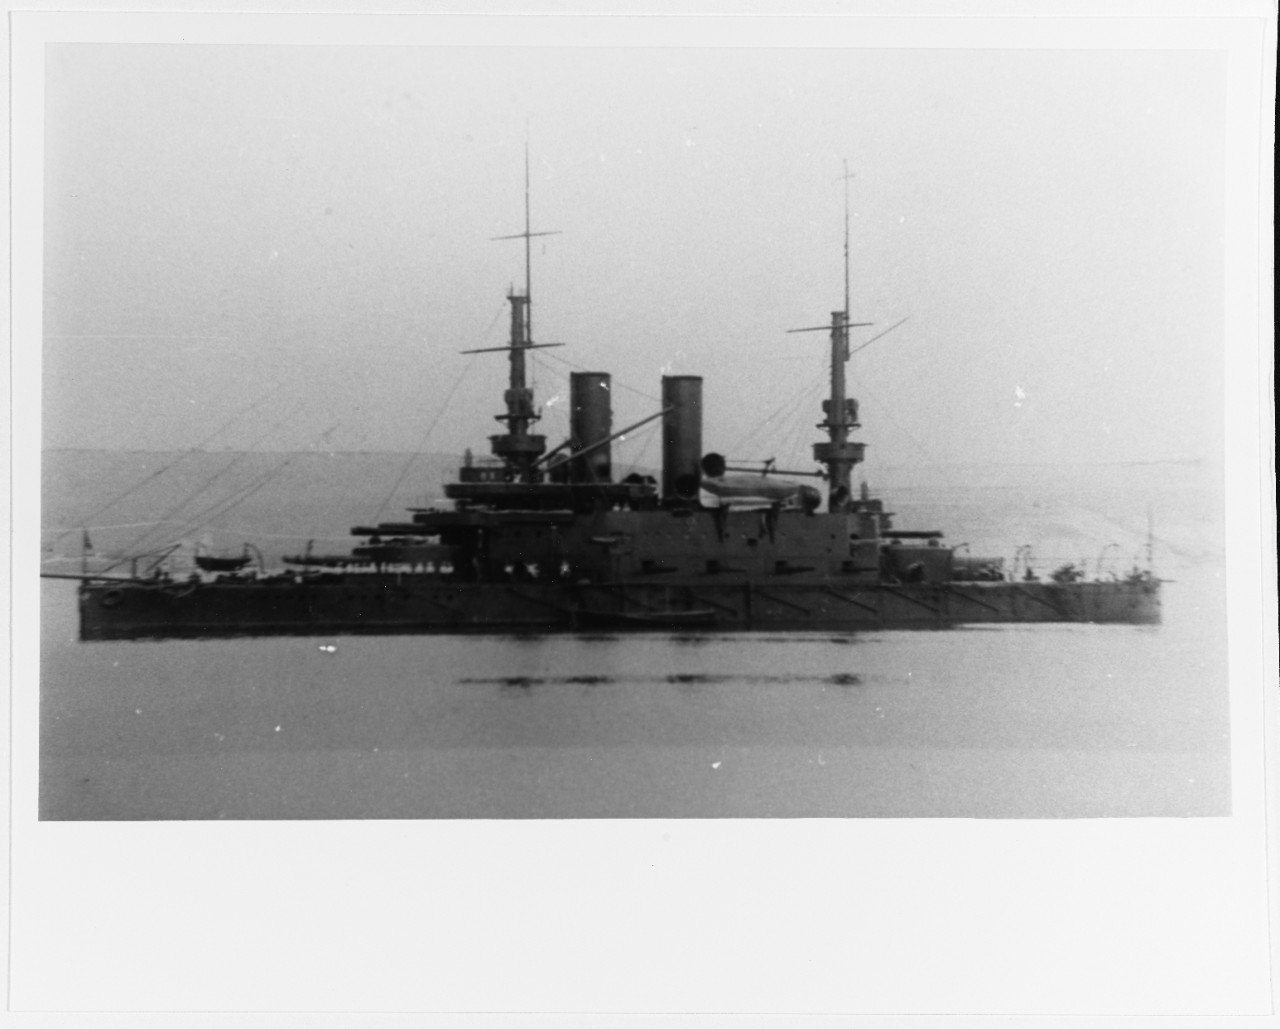 TRI SVIATITELIA (Russian Battleship, 1901-1923)